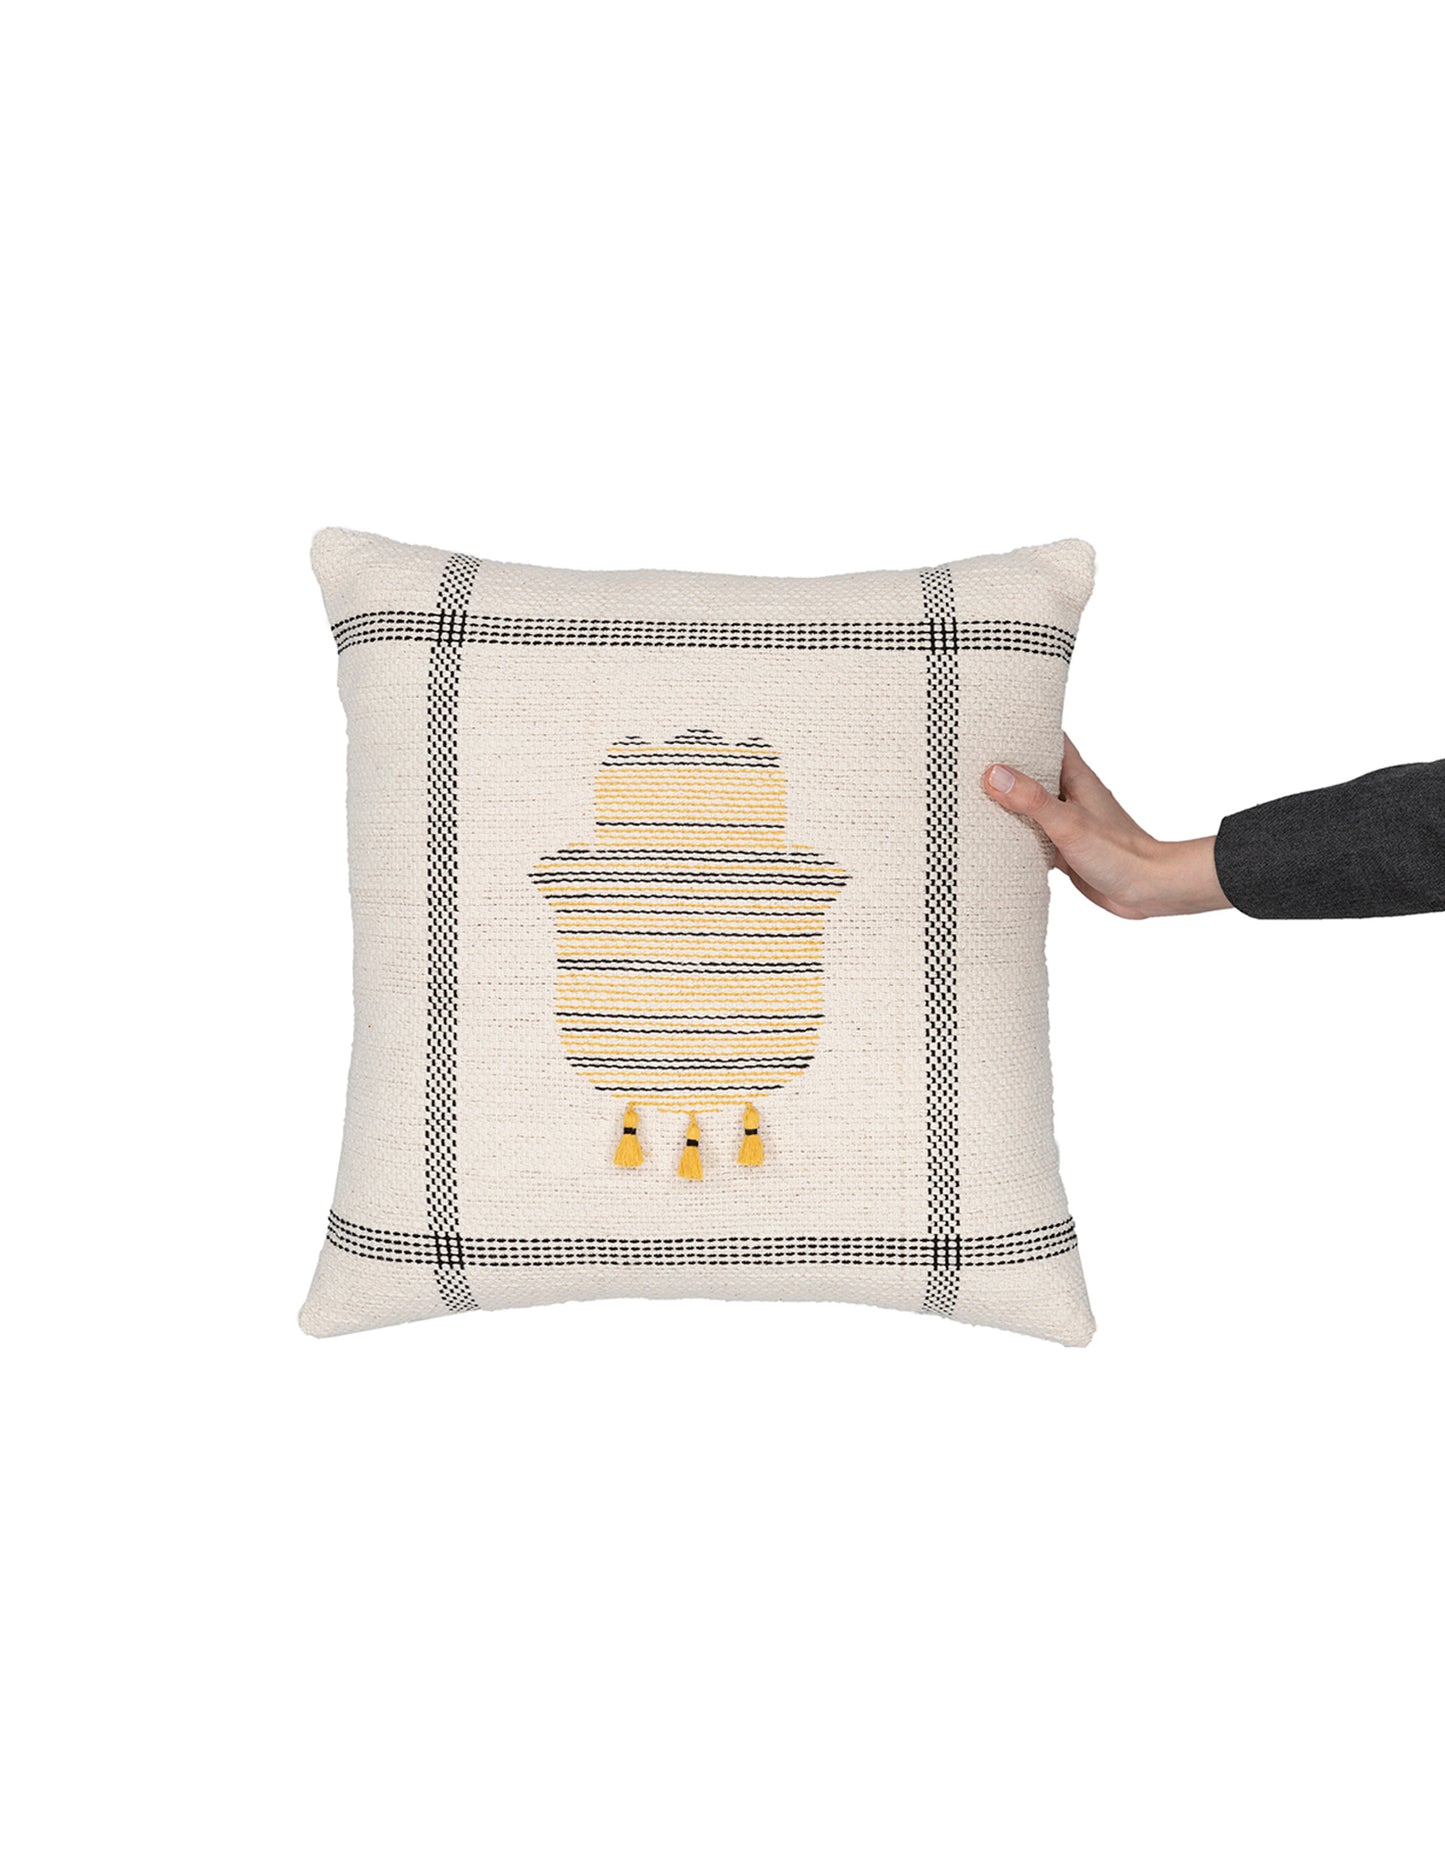 Hand-knit kilim hand design cushion